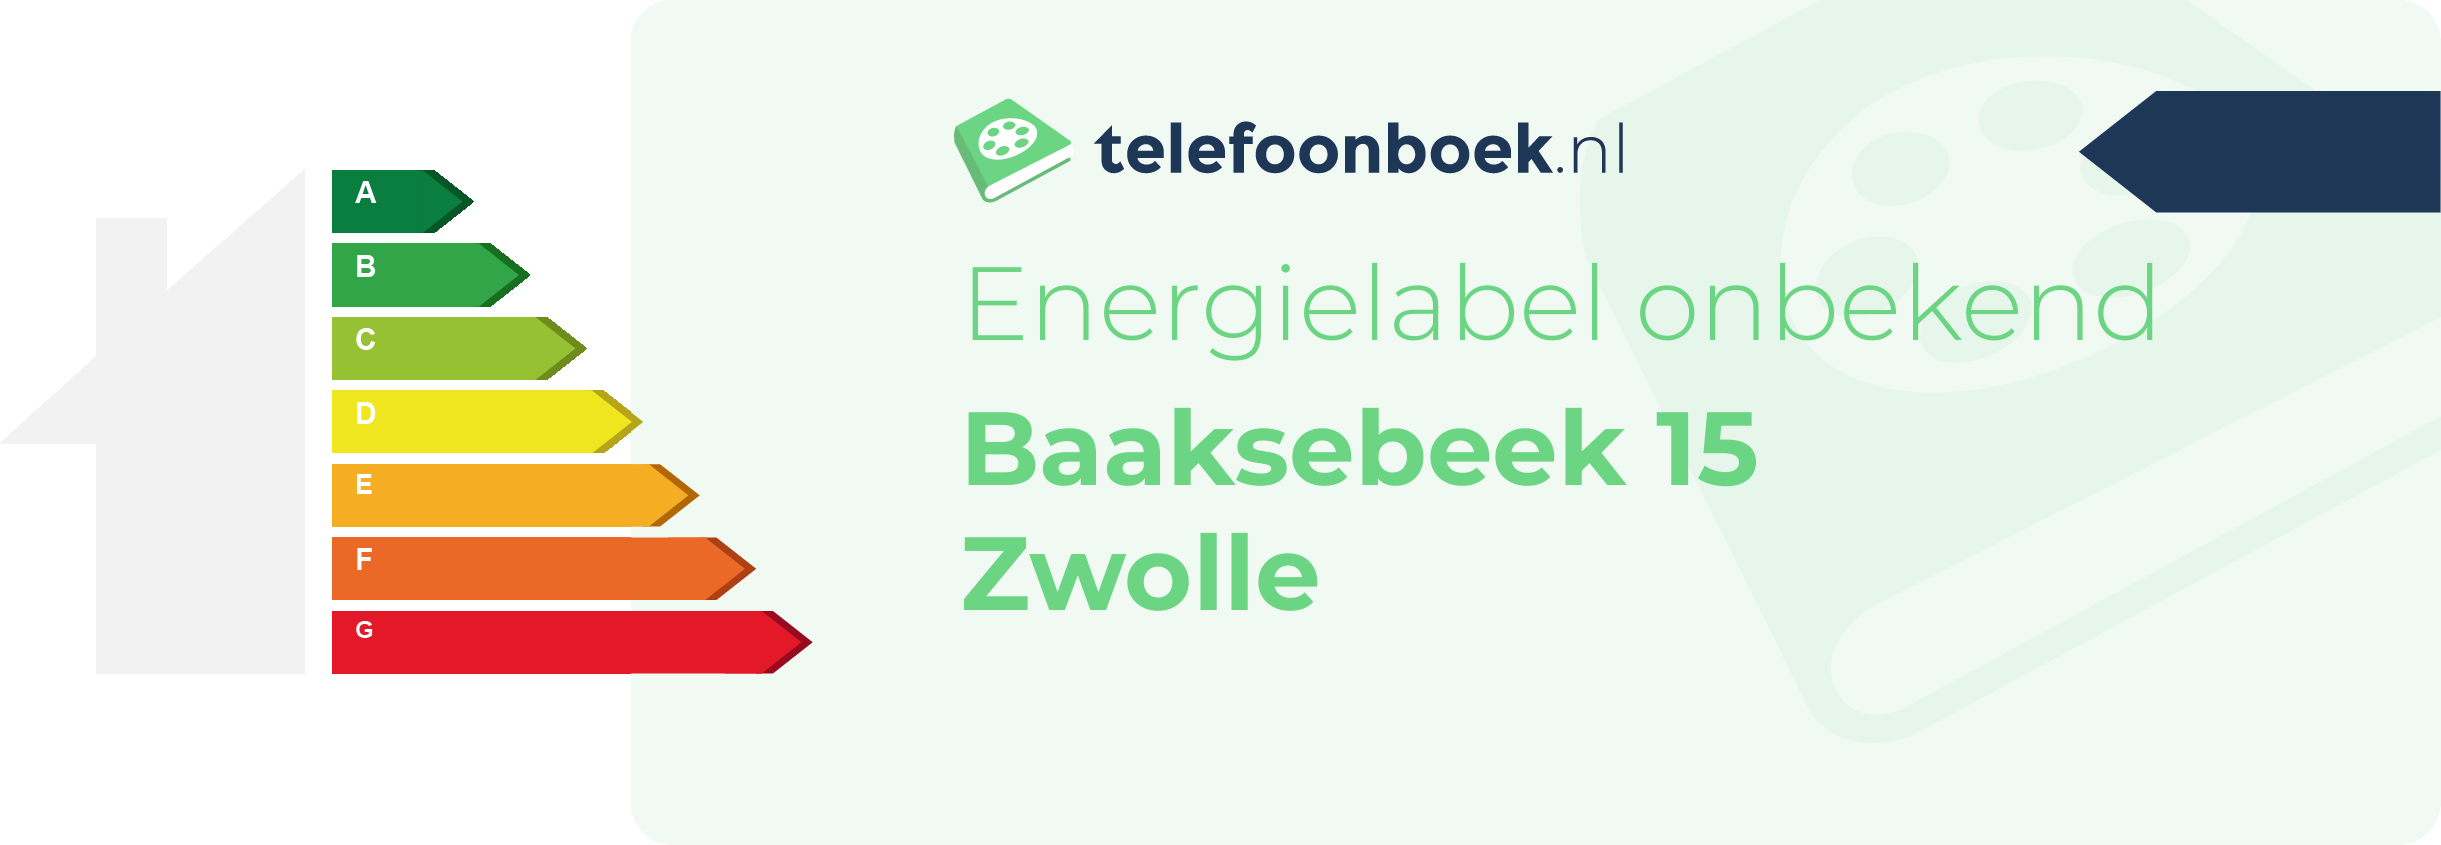 Energielabel Baaksebeek 15 Zwolle